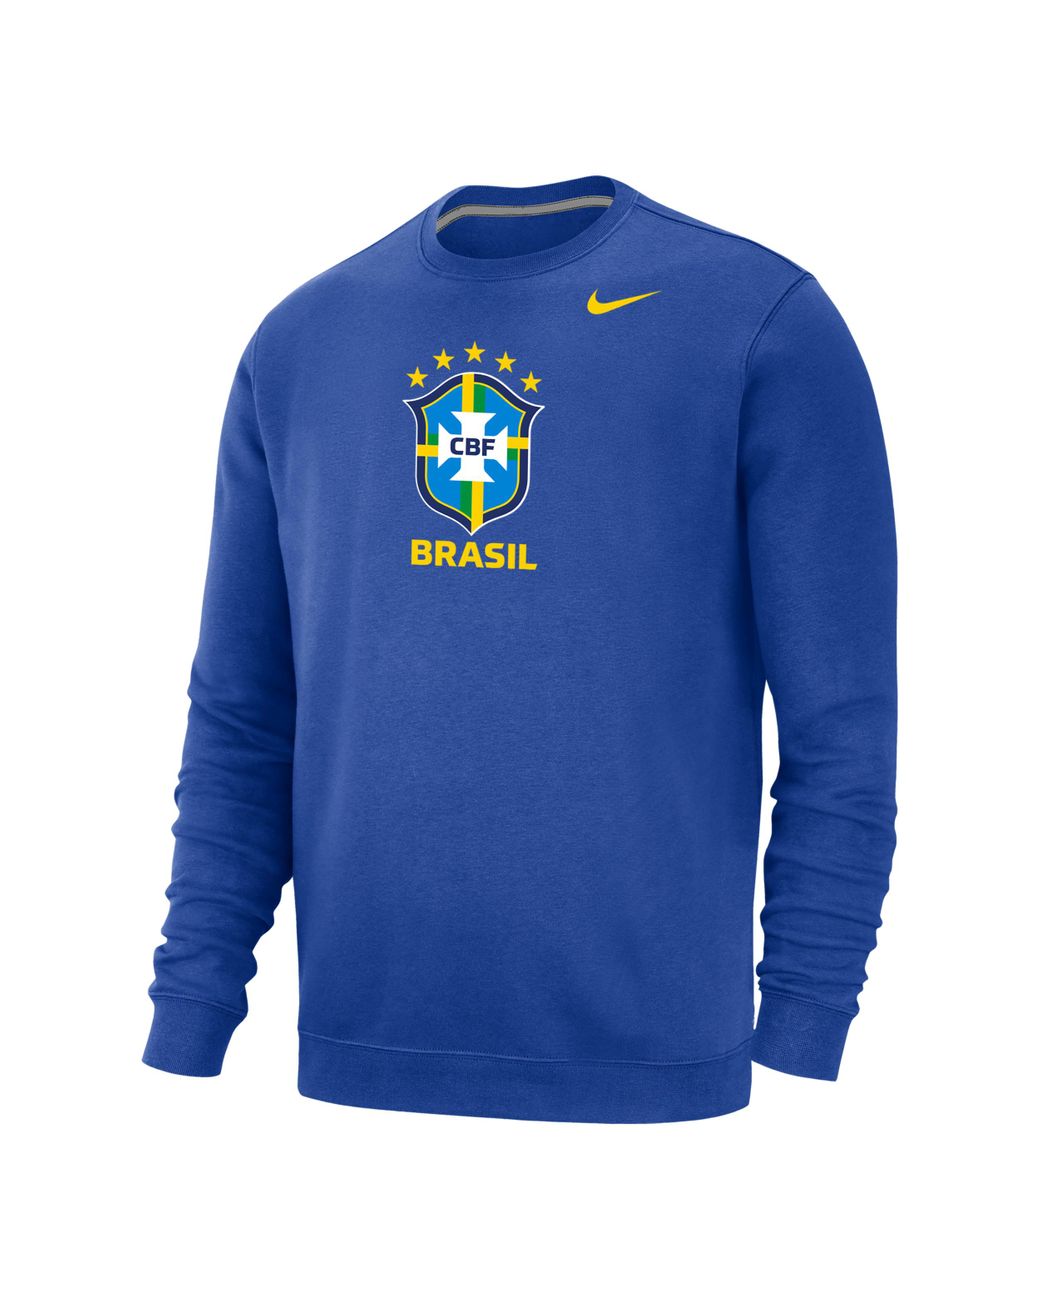 Nike Brazil Club Fleece Crew-neck Sweatshirt In Blue, for Men | Lyst